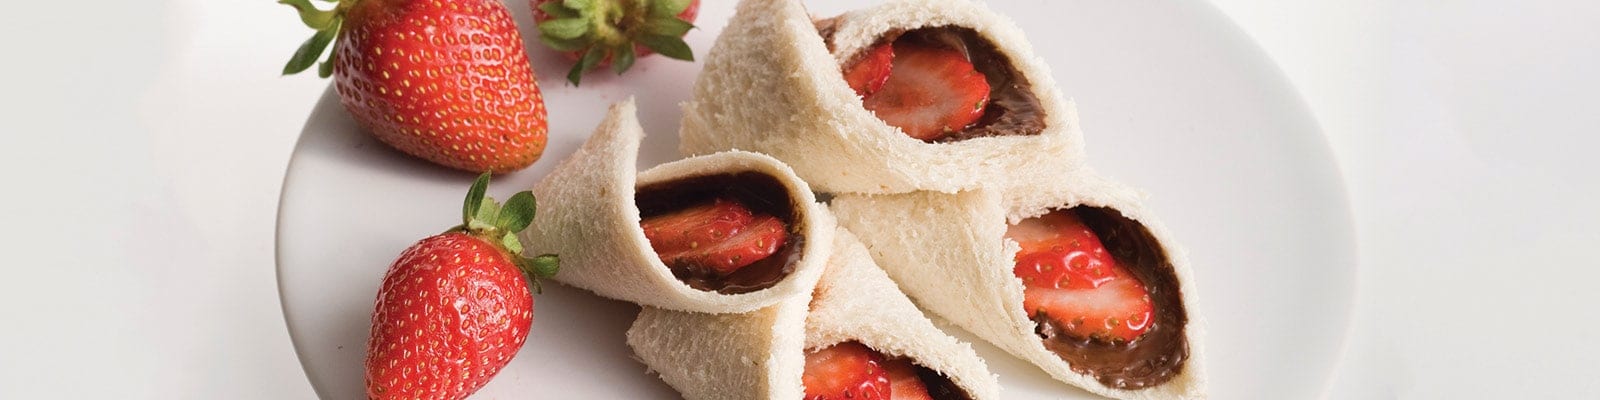 Strawberry Wraps with Nutella® hazelnut spread